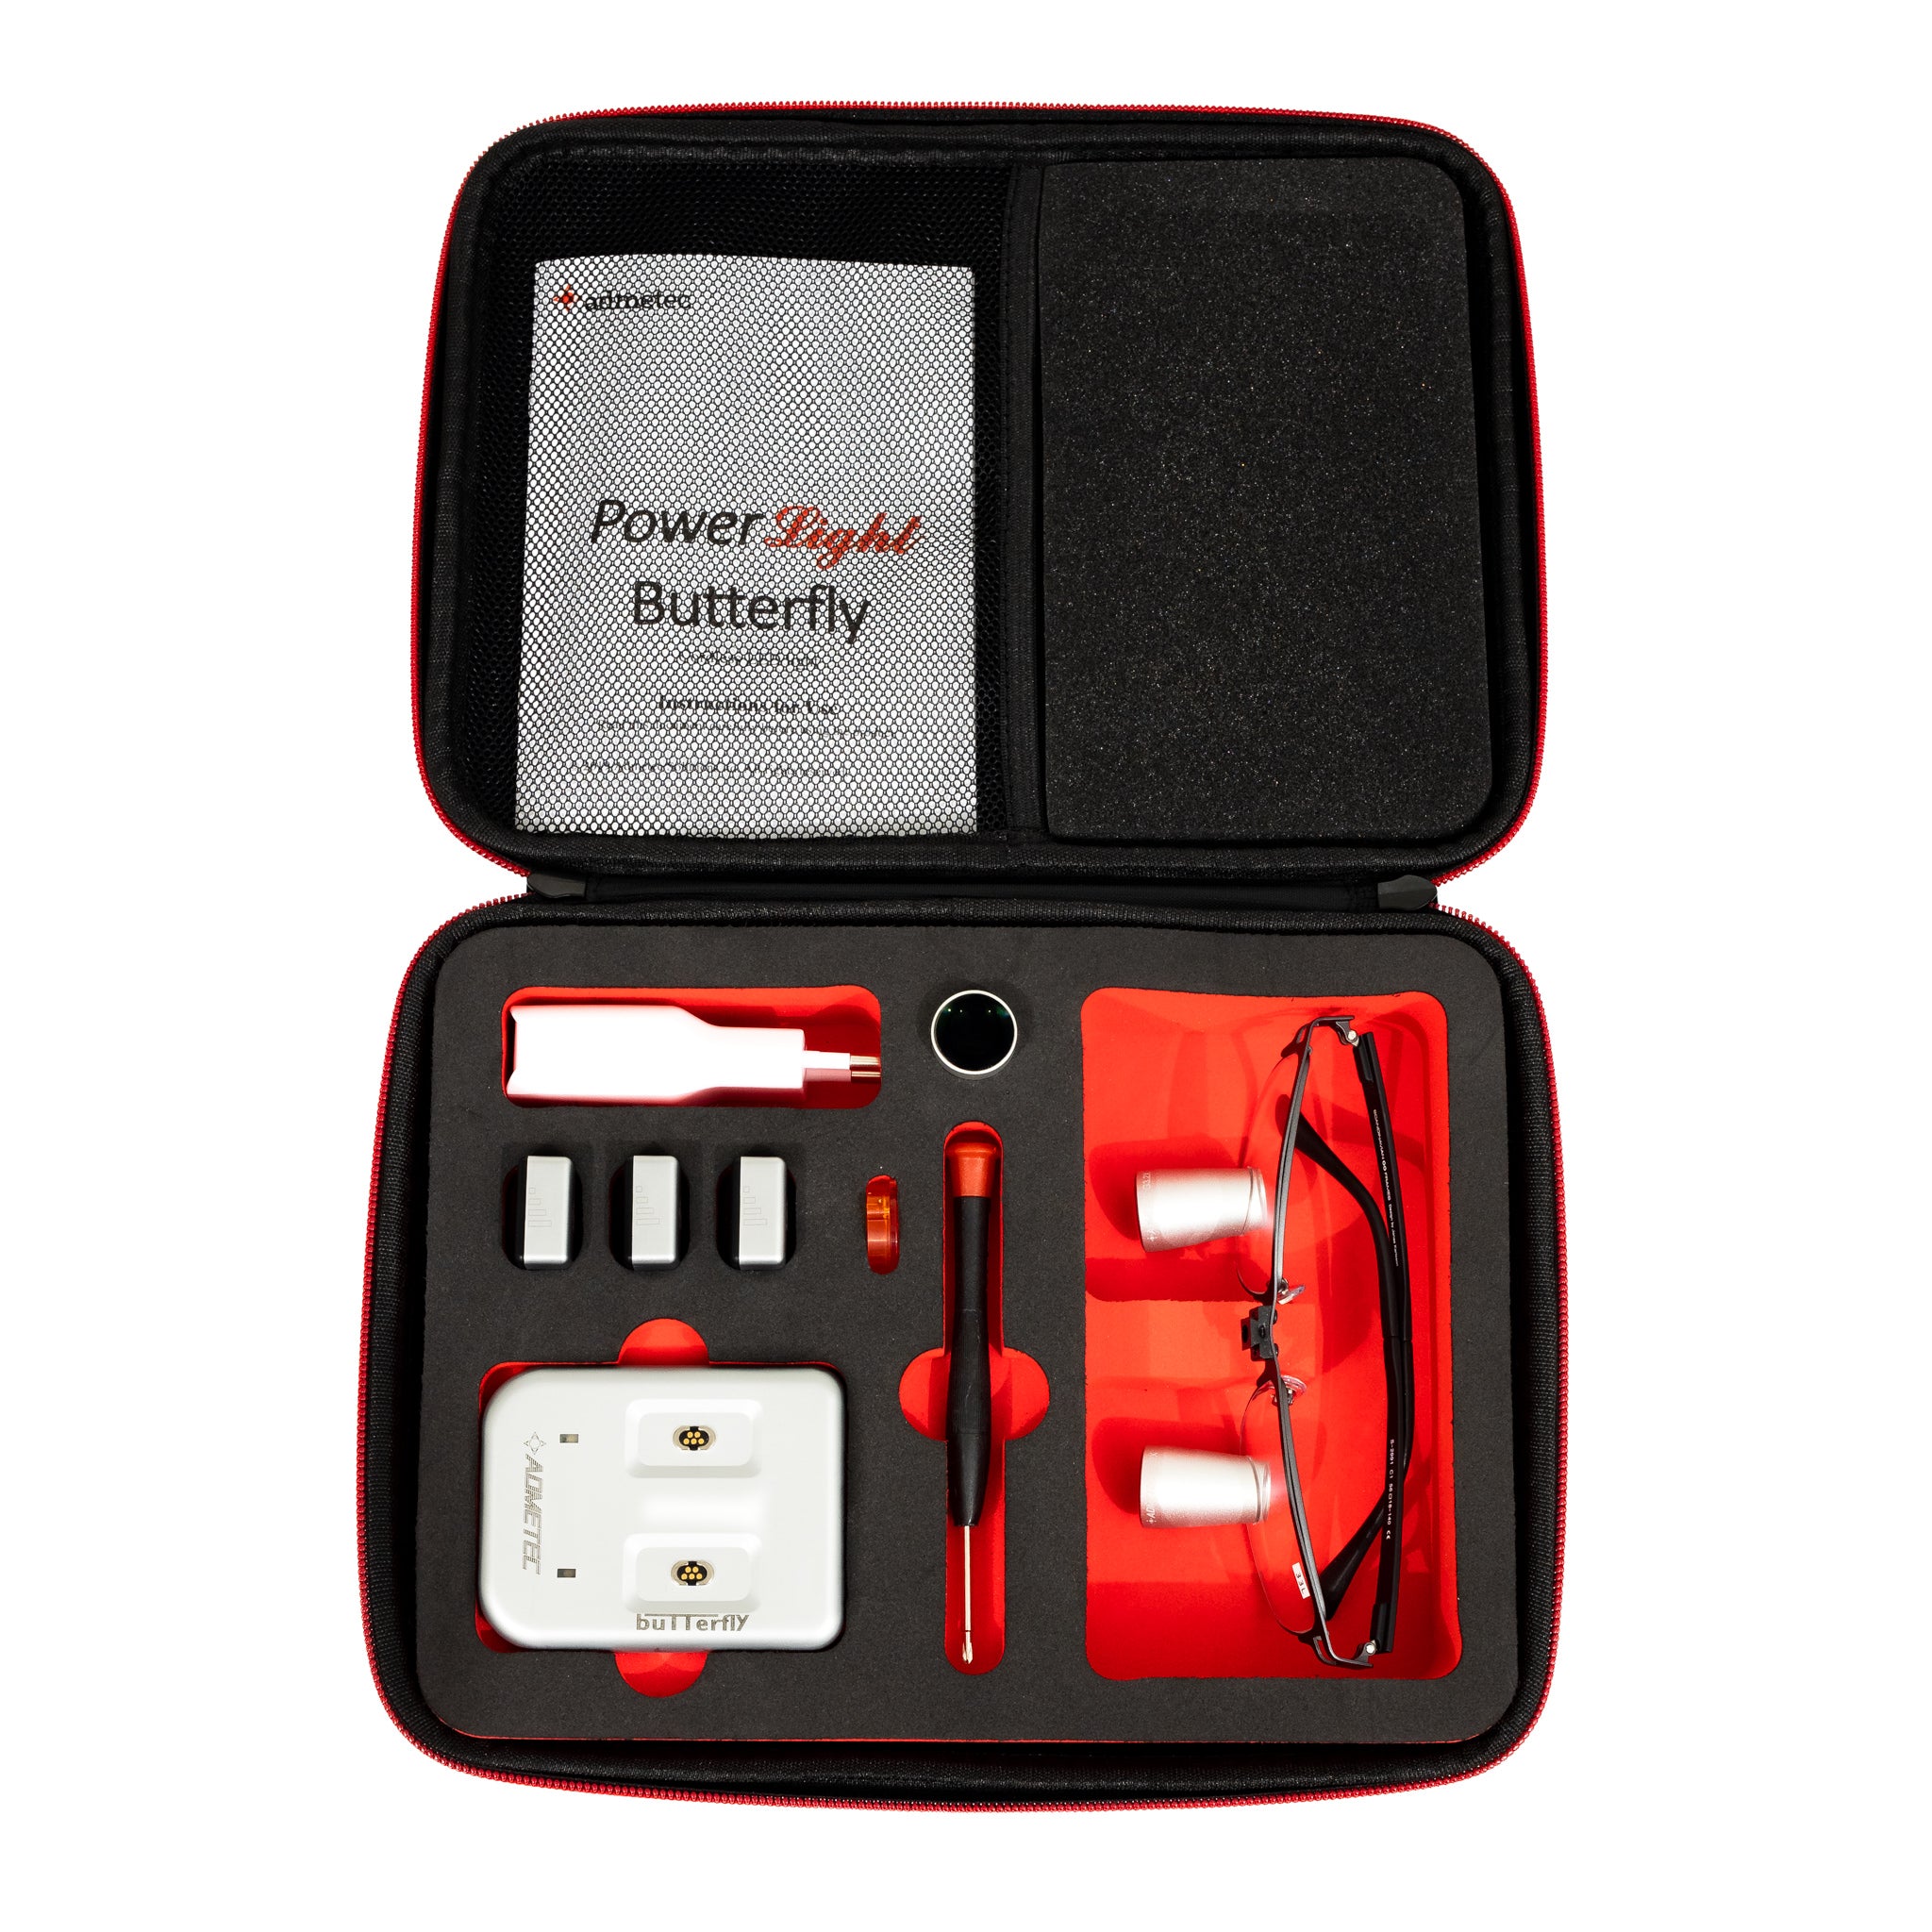 Butterfly-S Test Kit